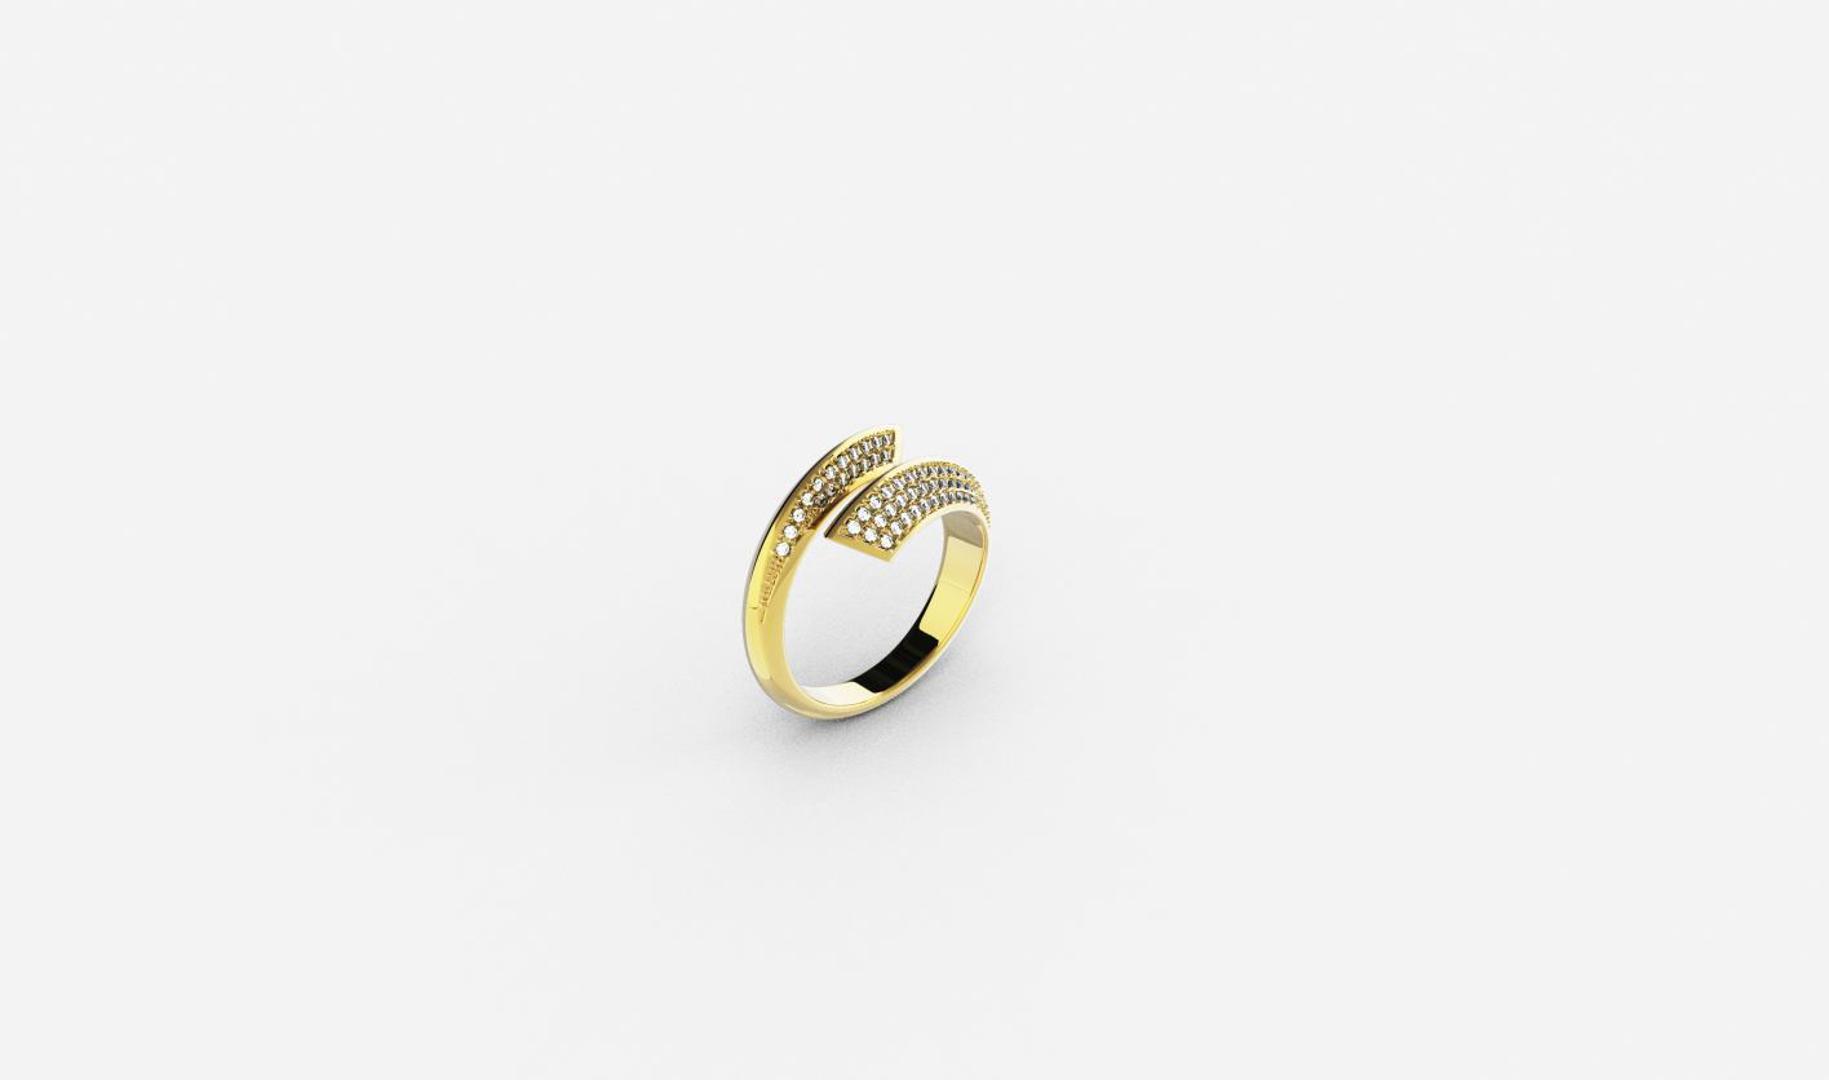 Zlatni prsten, red.cijena 1170kn, sada 760,50kn - ZAKS